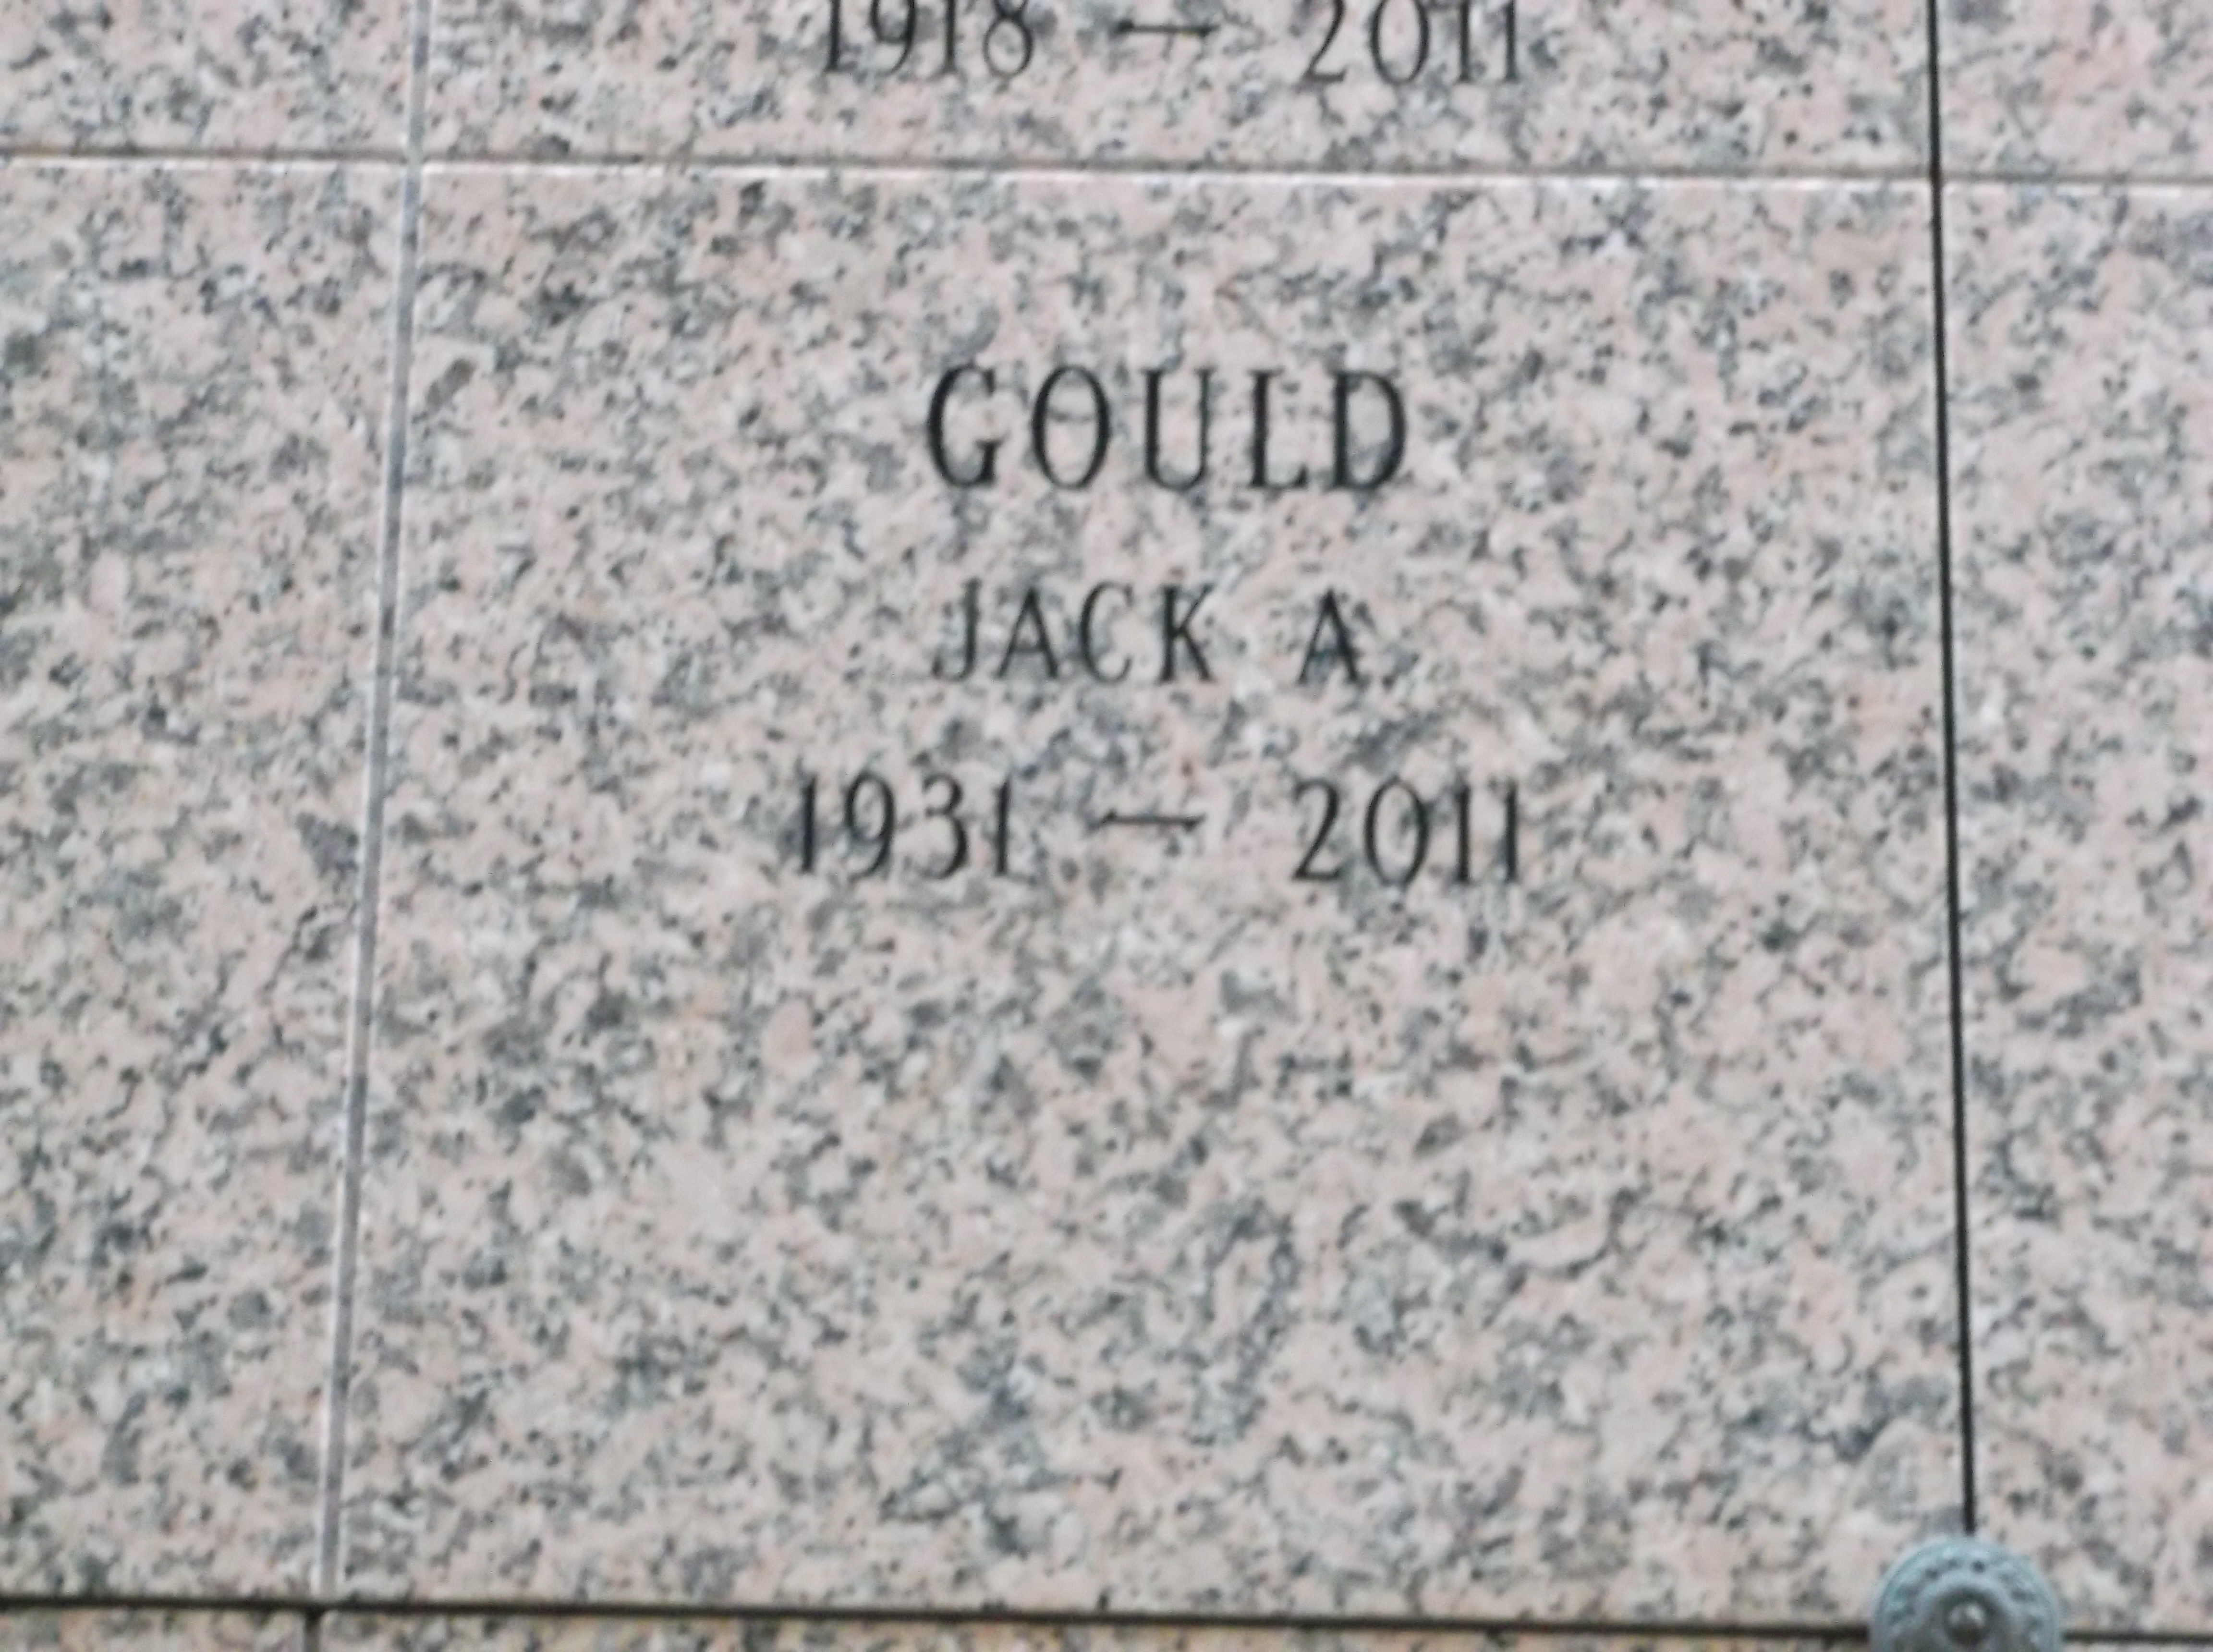 Jack A Gould